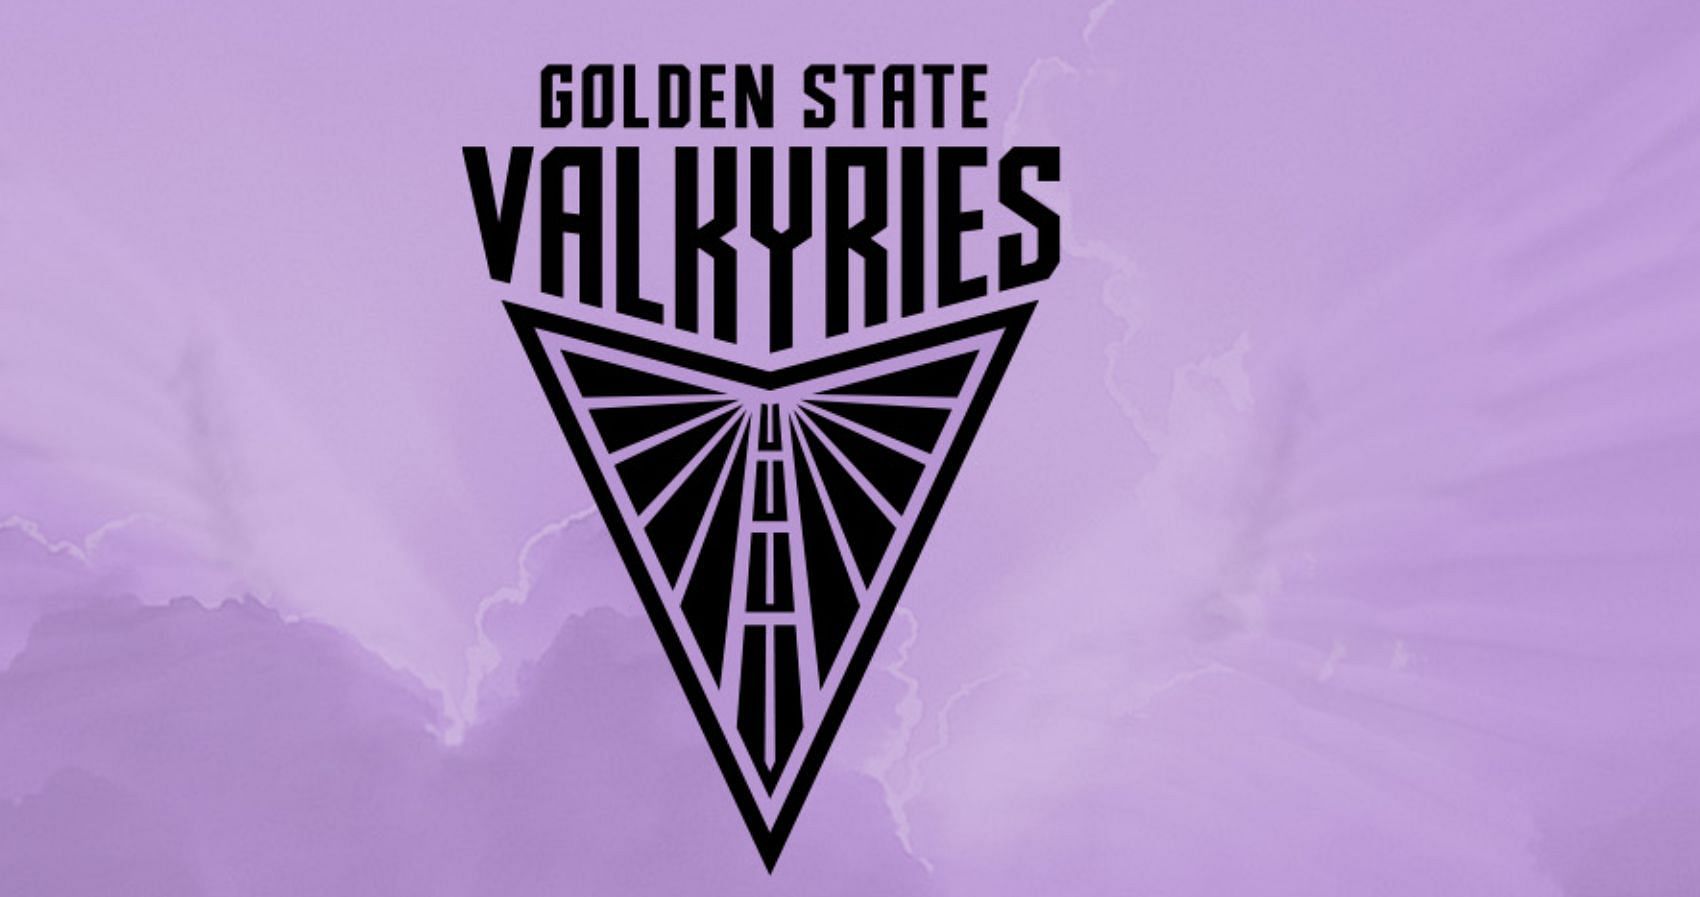 3 hidden details in Golden State Valkyries logo